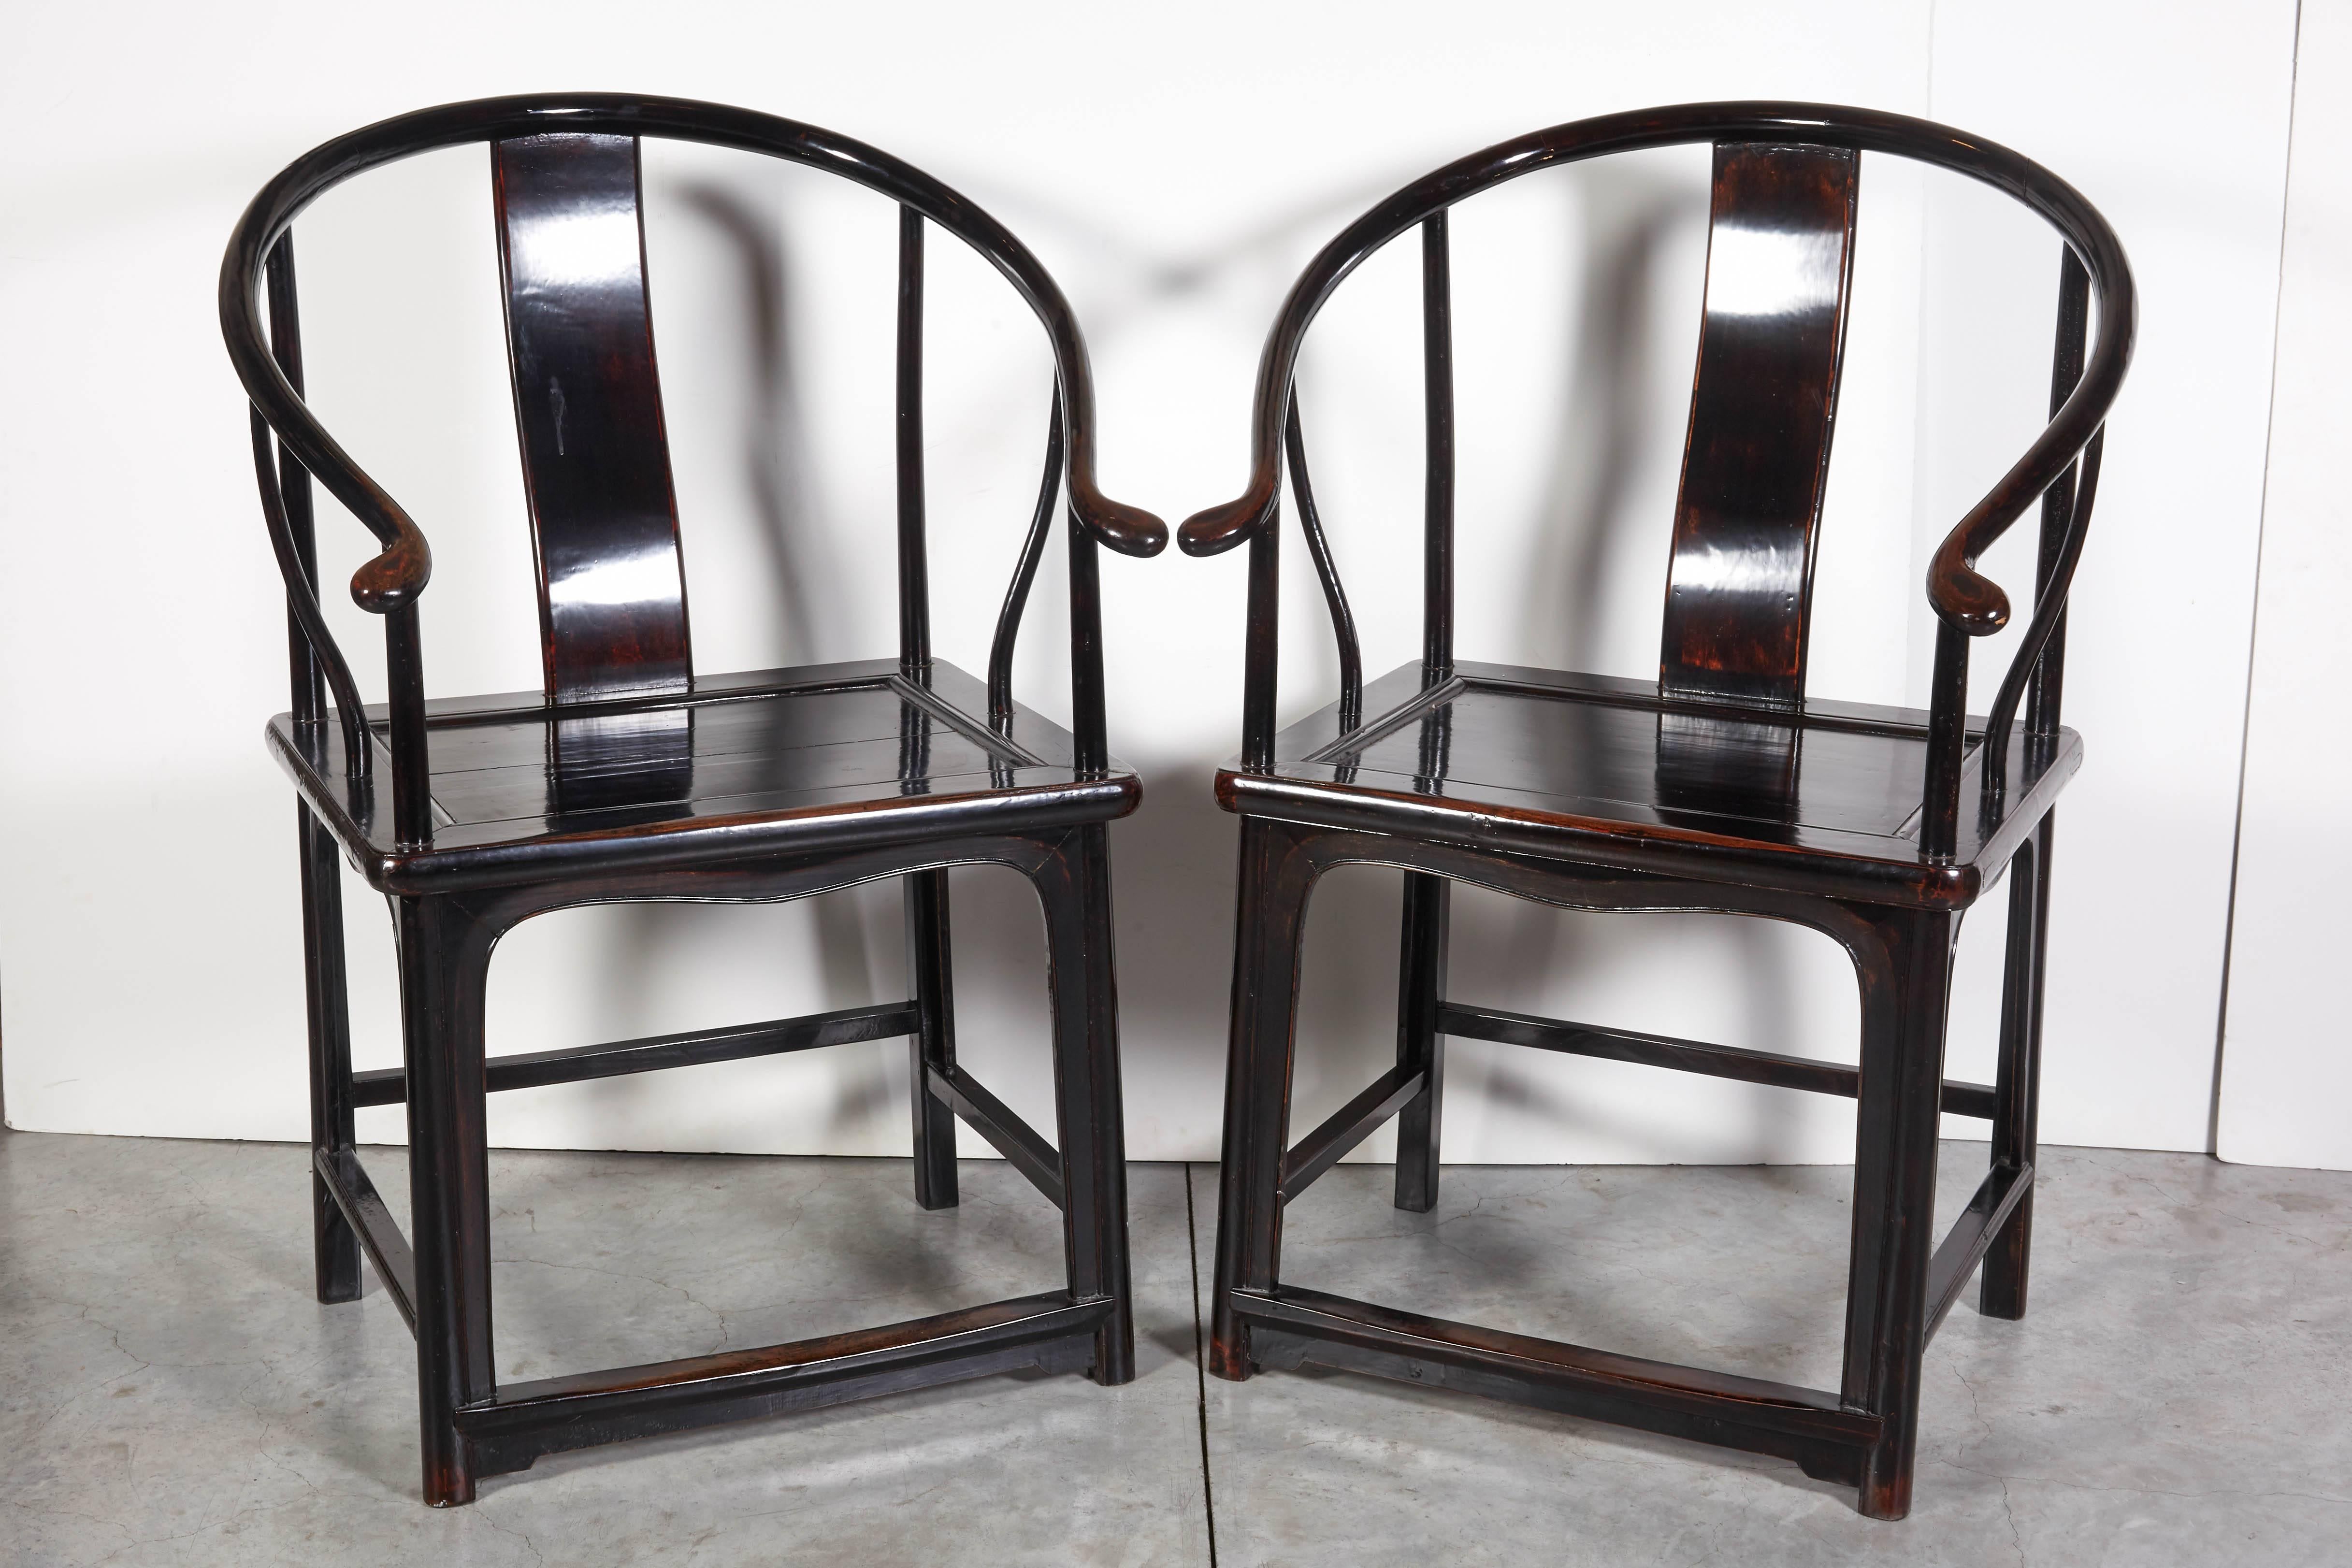 Ein ungewöhnlich schönes Paar antiker chinesischer Hufeisenstühle mit auffälliger Lackierung. Diese anmutig geformten Stühle verleihen jedem Raum einen Hauch von Eleganz.
Abmessungen: L 26, T 21 Sitz H 20, Rücken H 39,5.